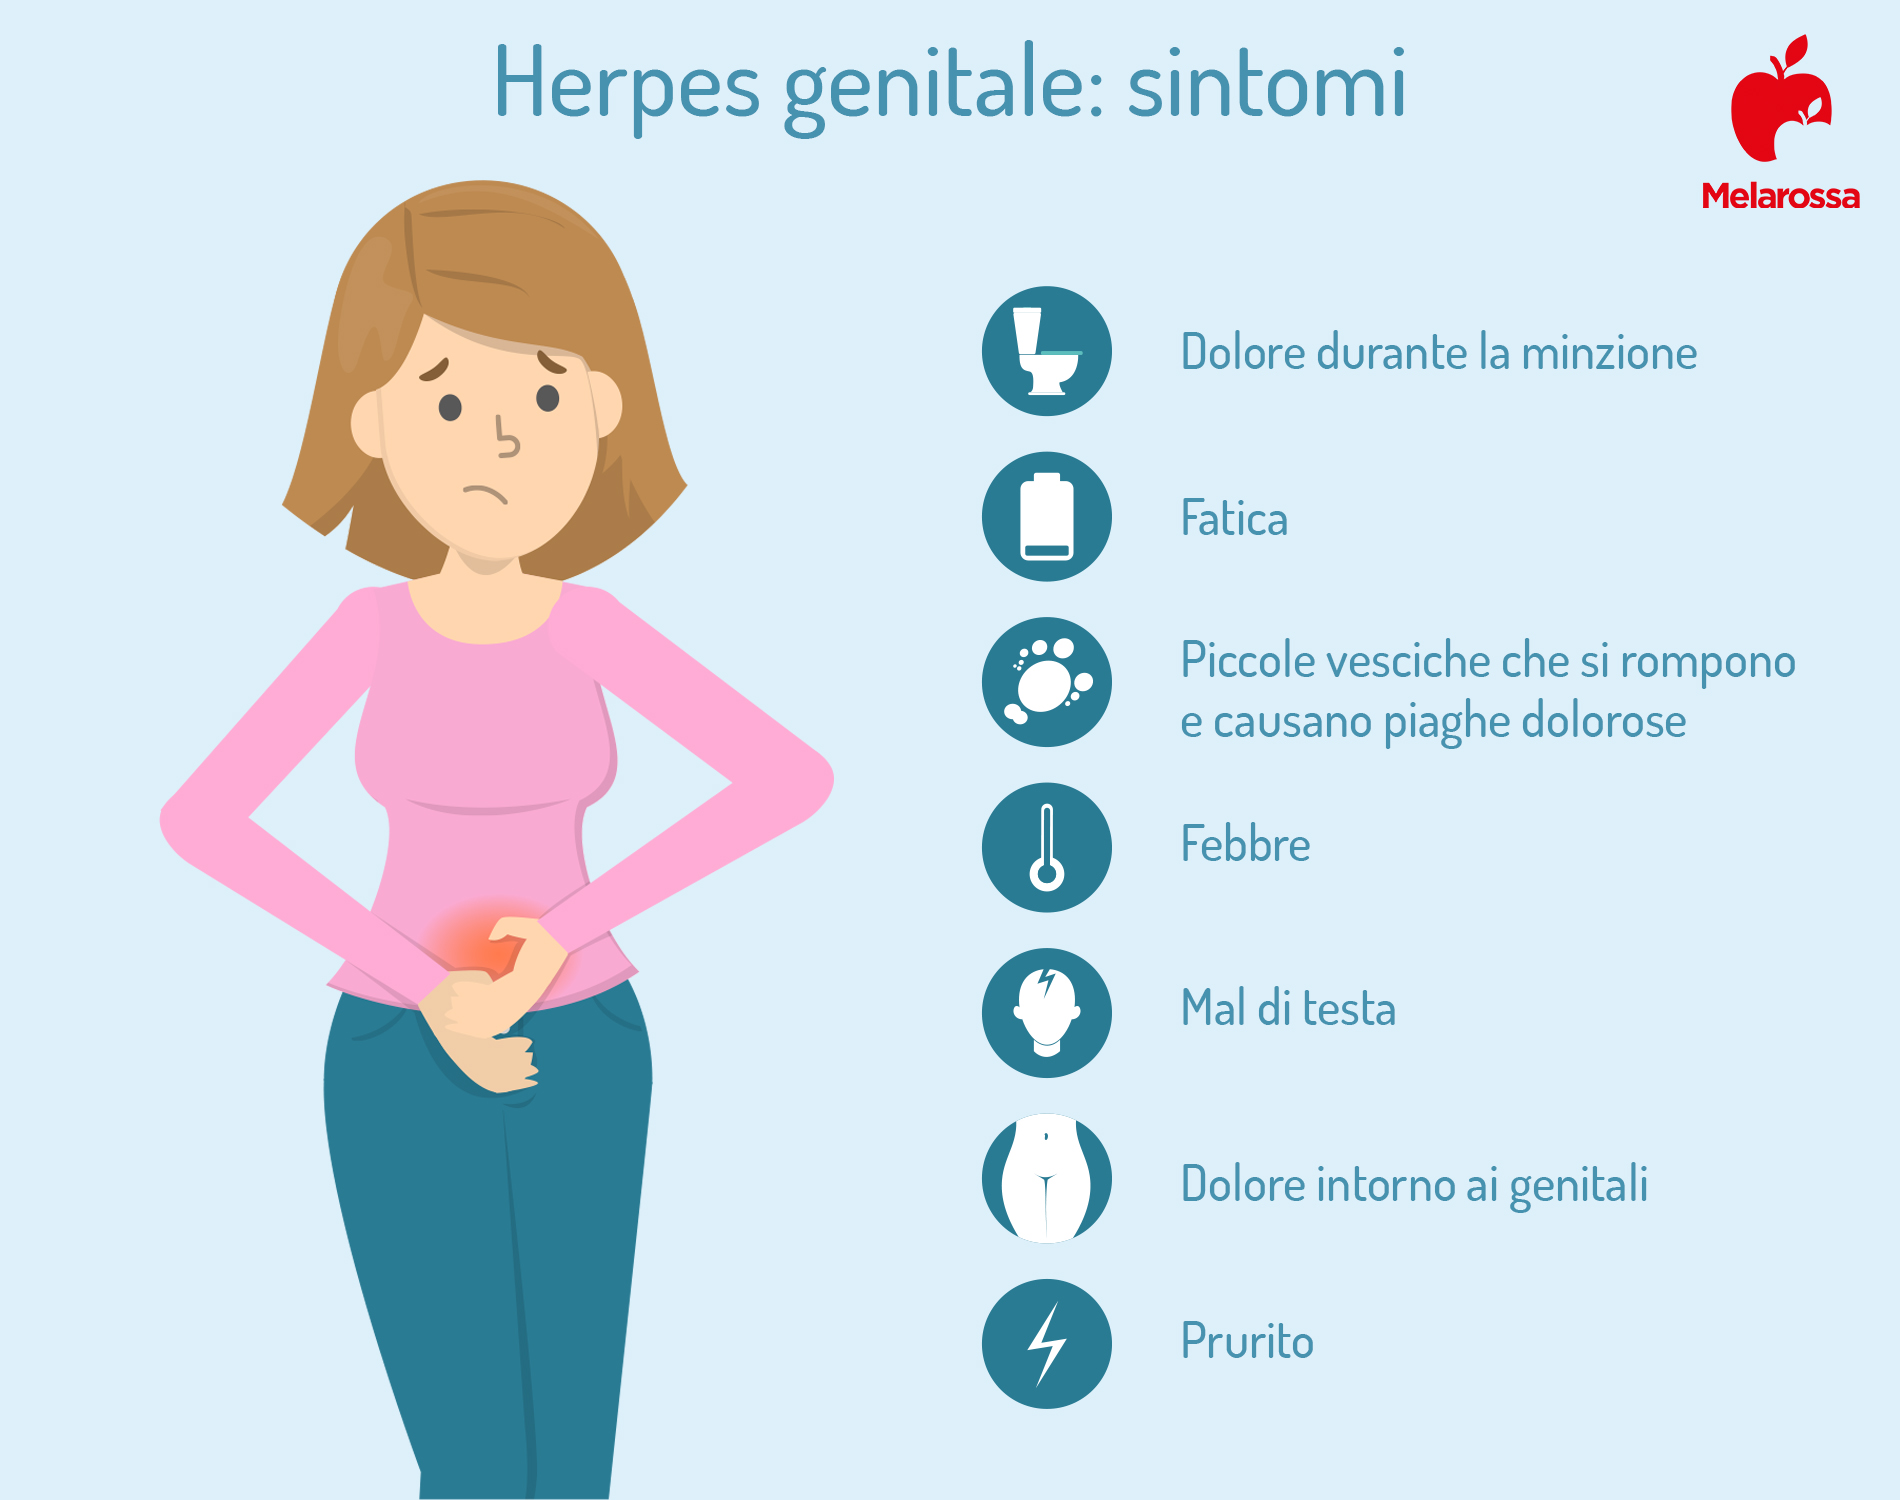 herpes genitale: sintomi